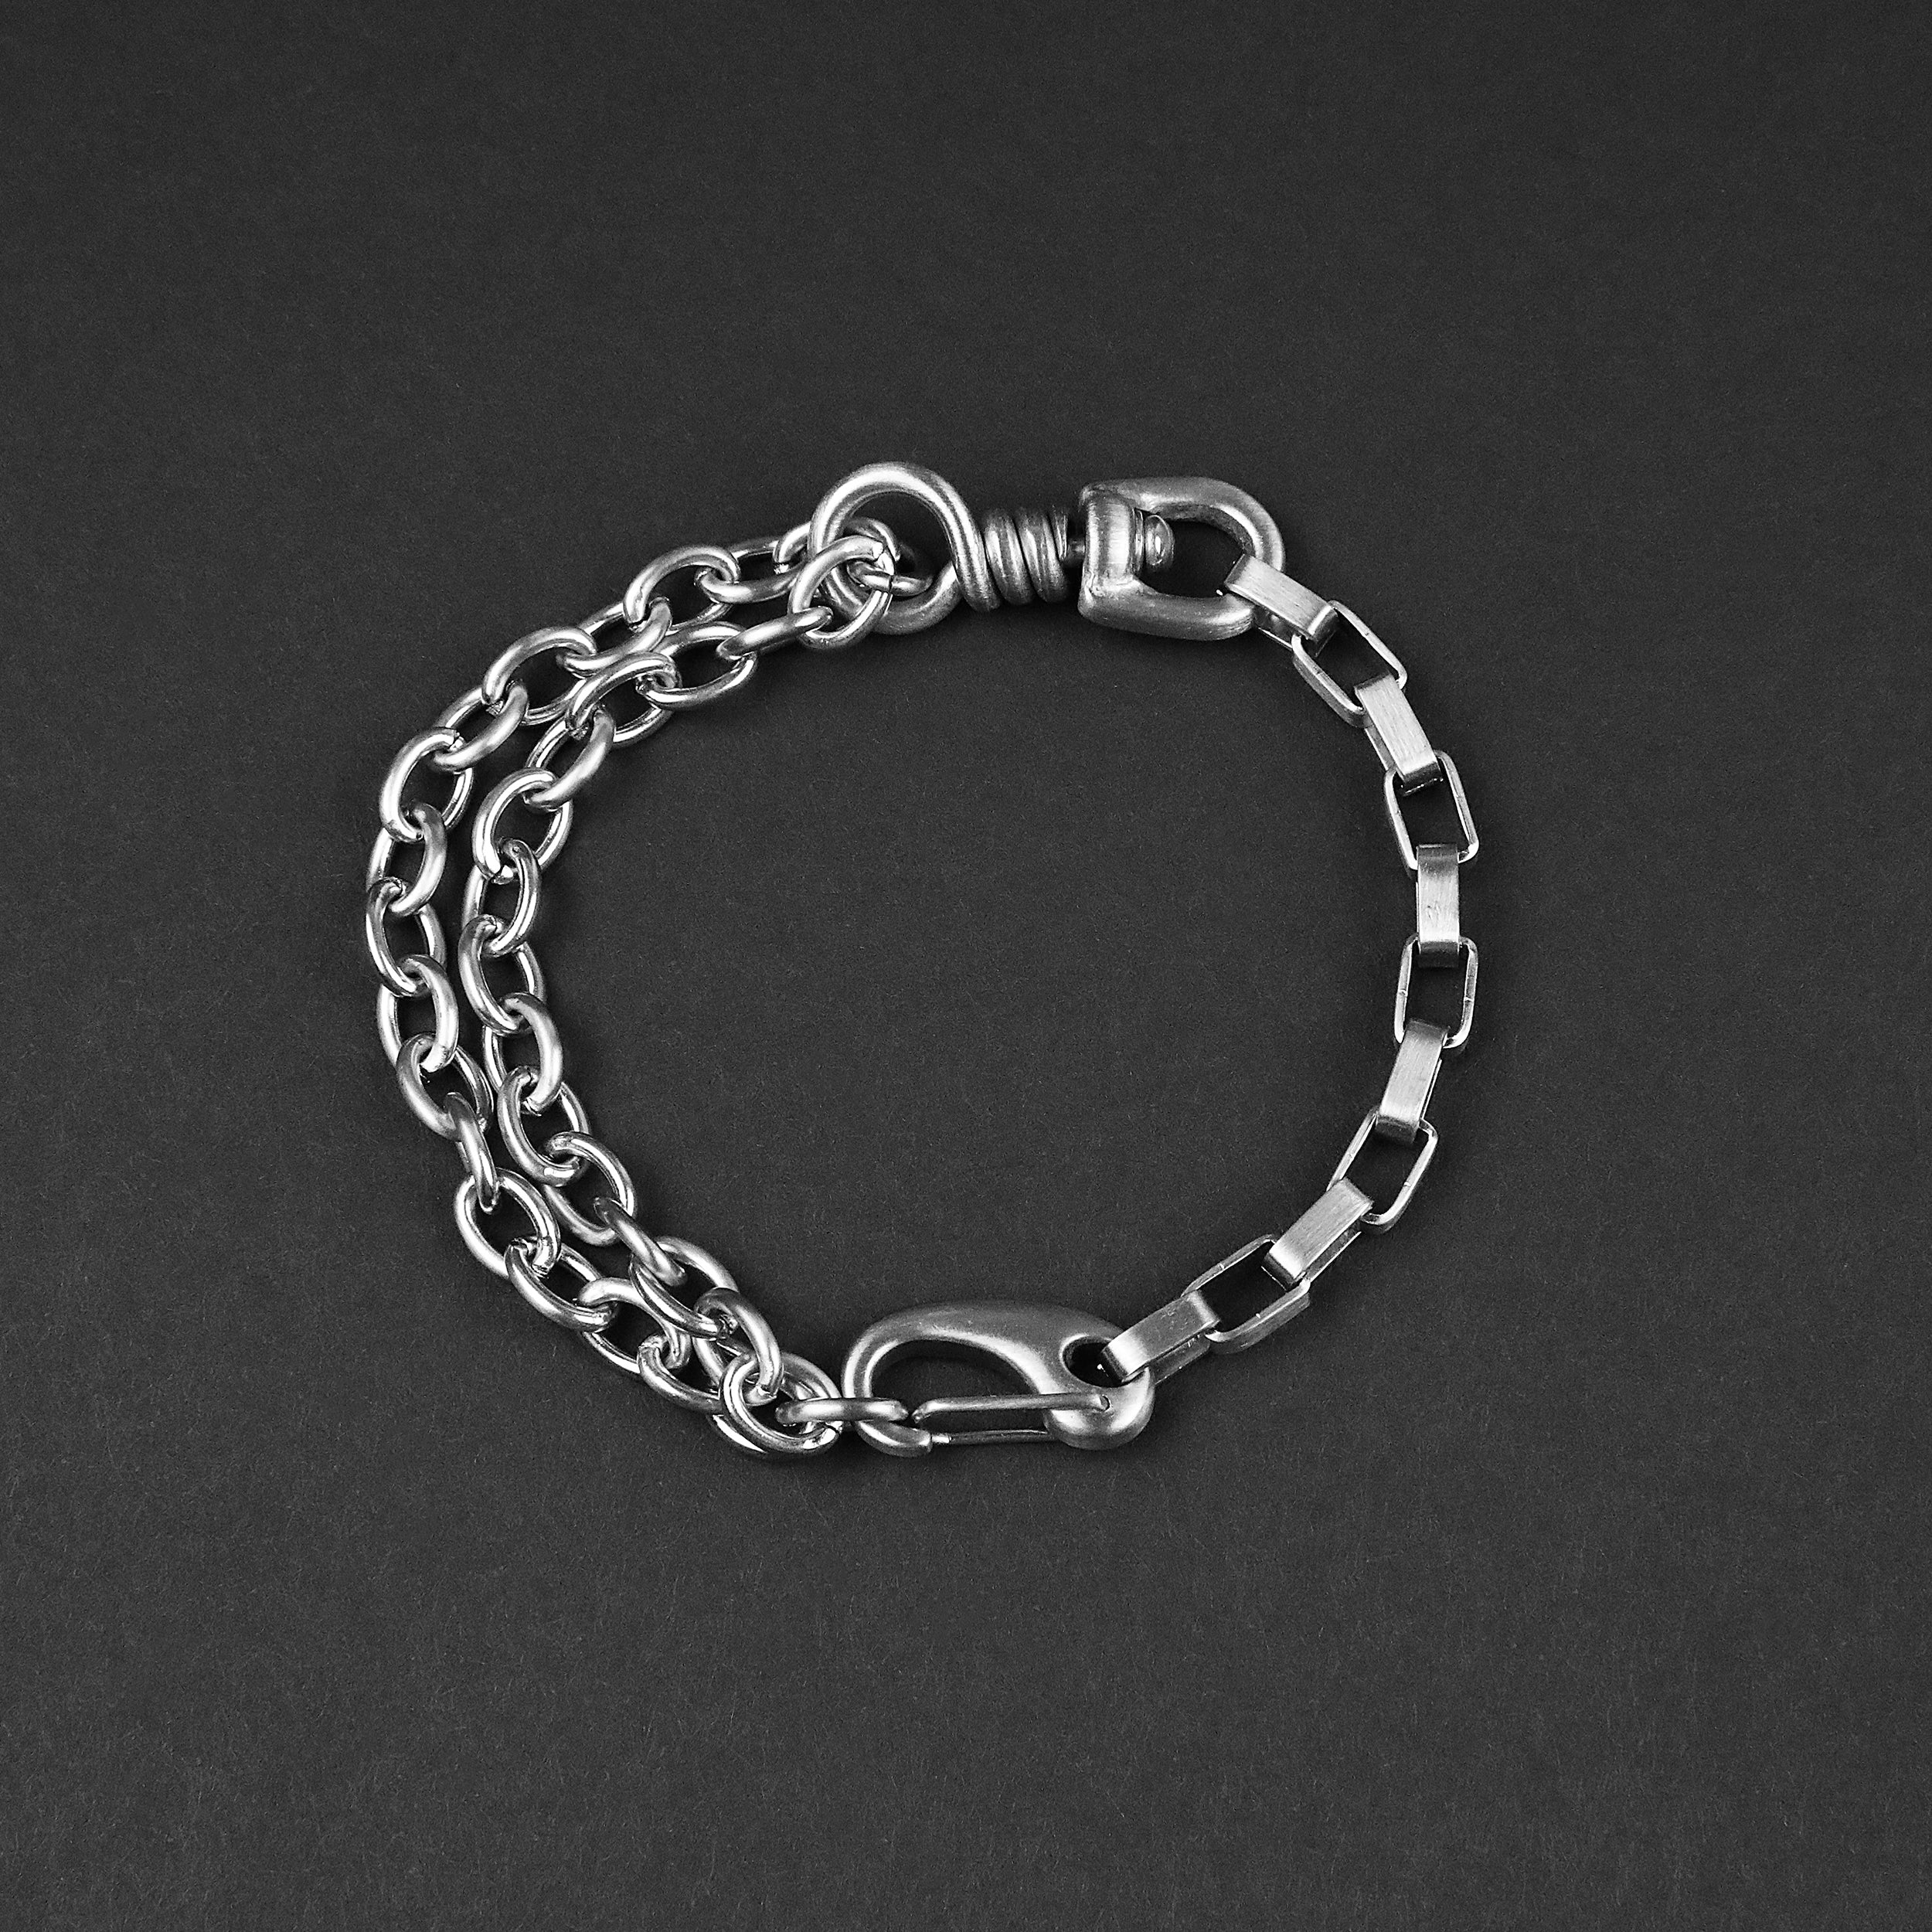 Experiment Chain Bracelet - Matte Silver 12mm